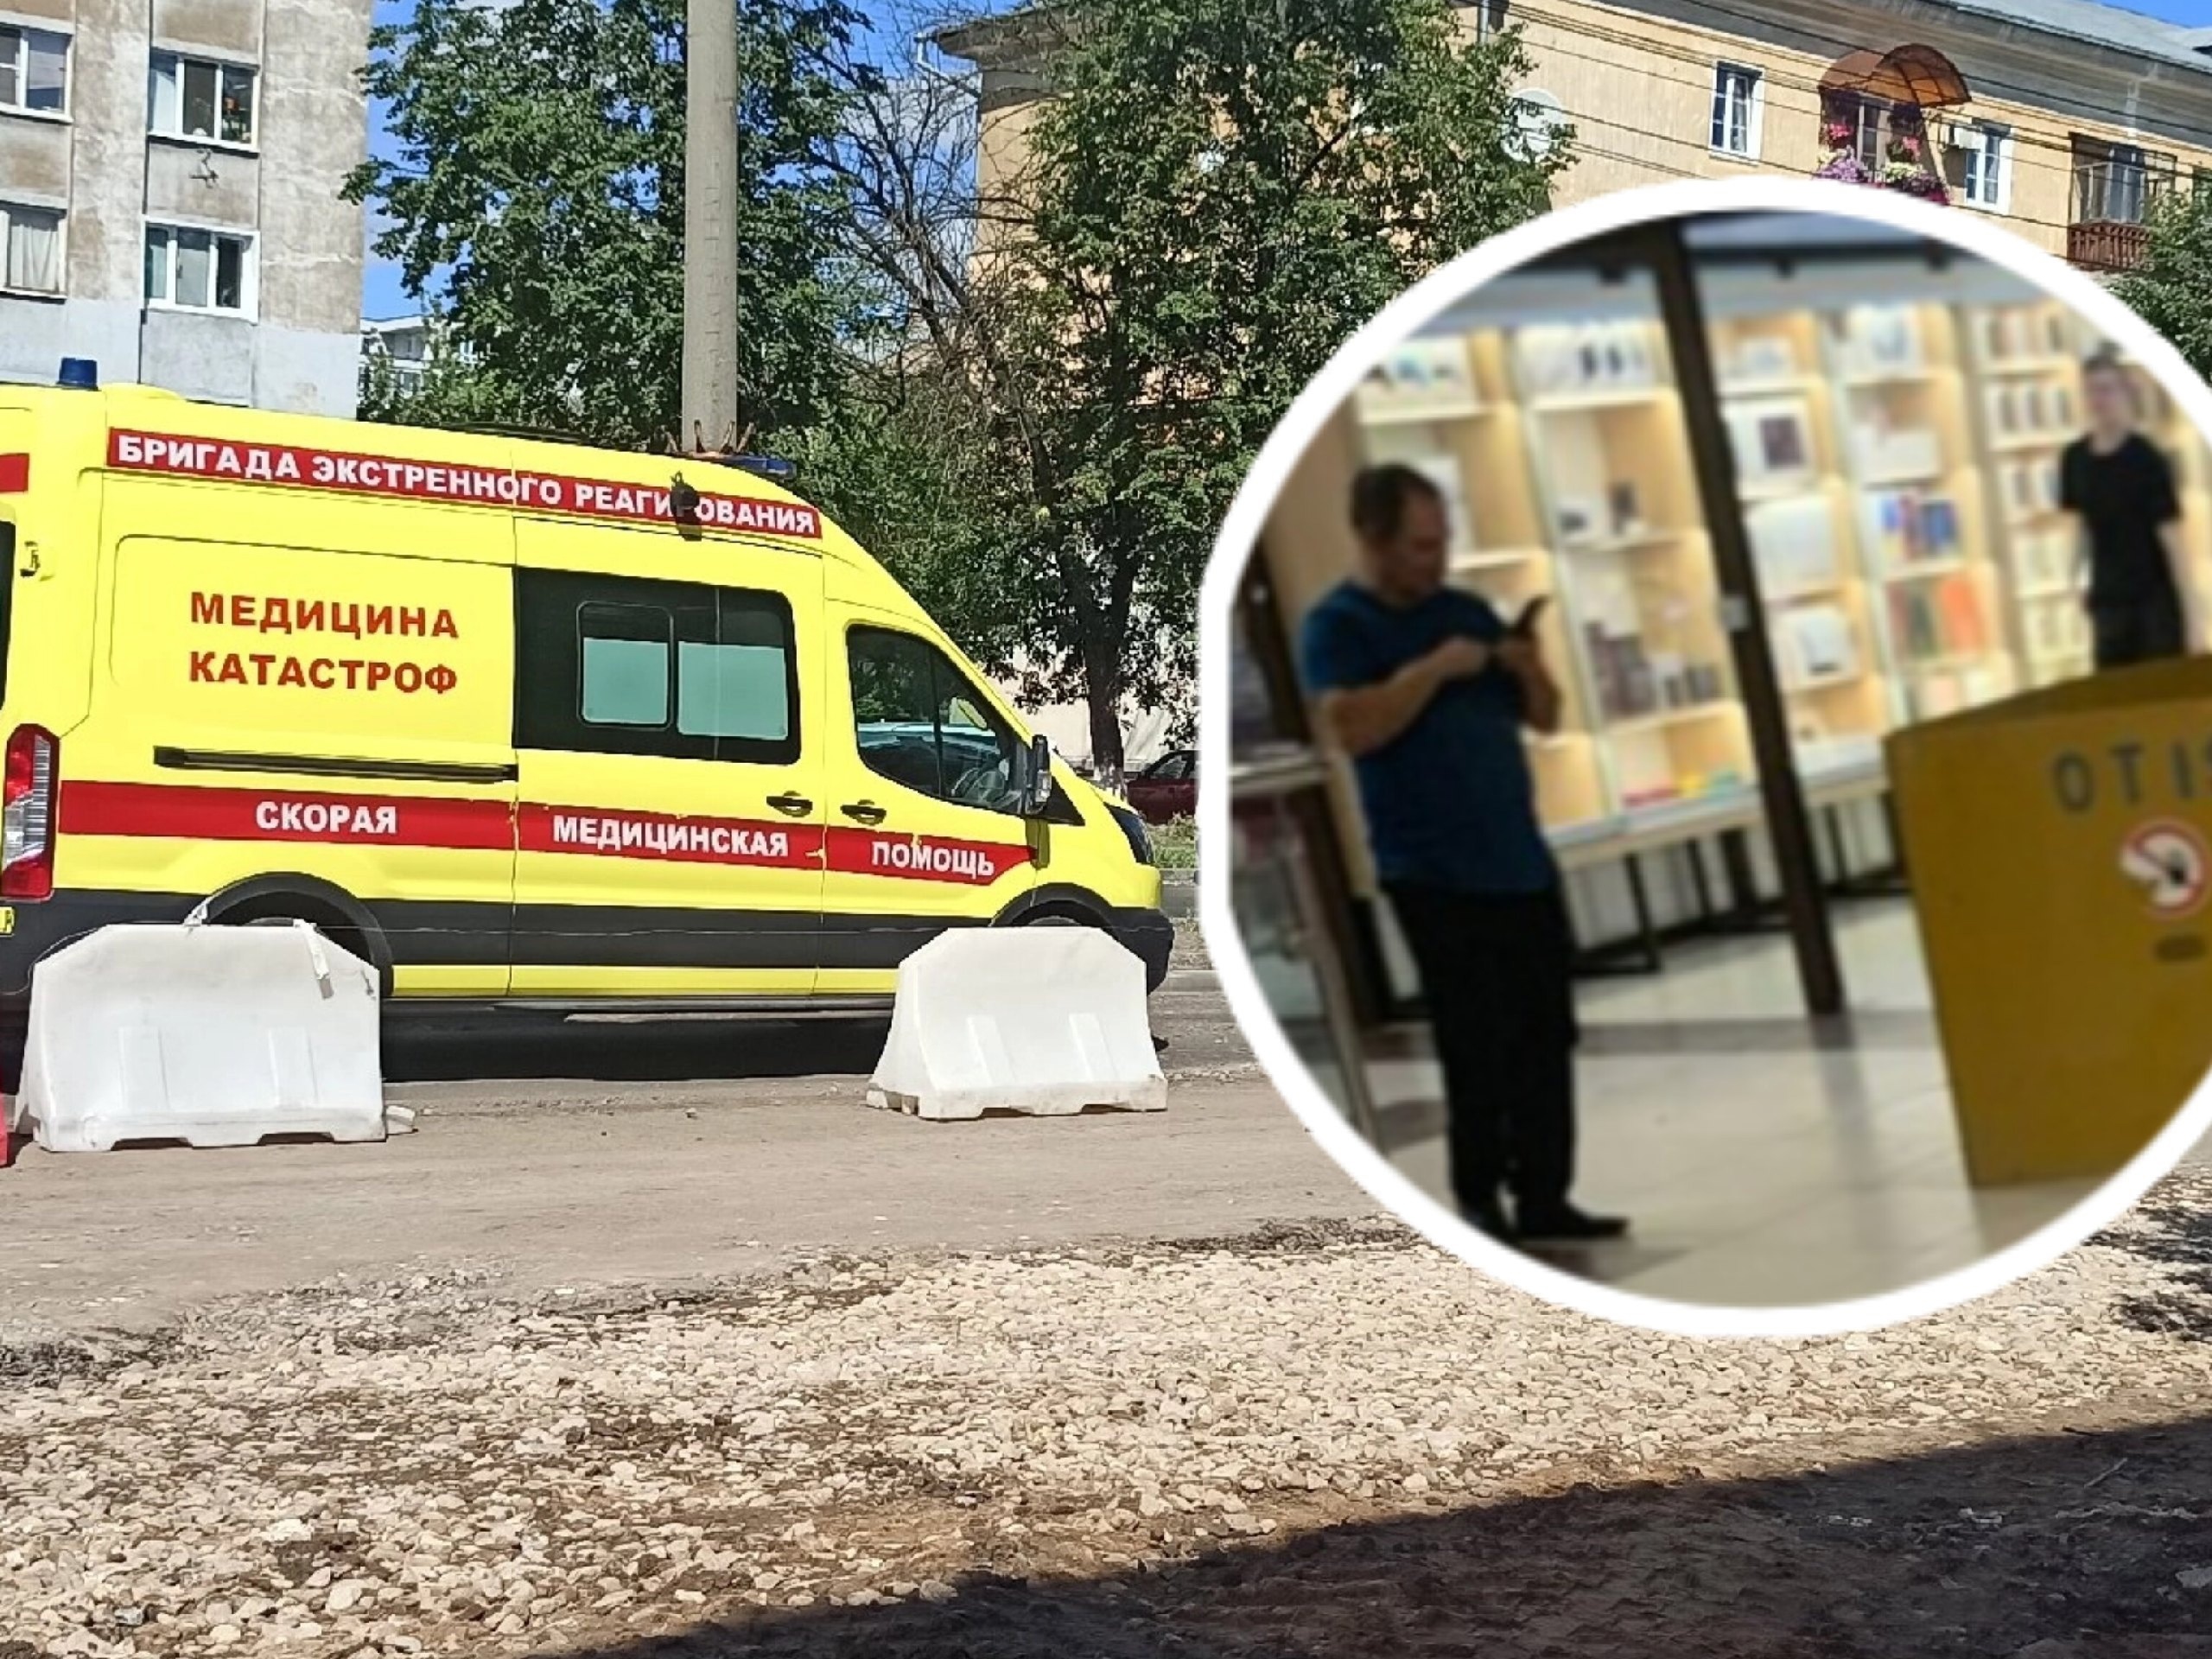 "Лежит уже три часа": в торговом центре Ярославля умерла женщина